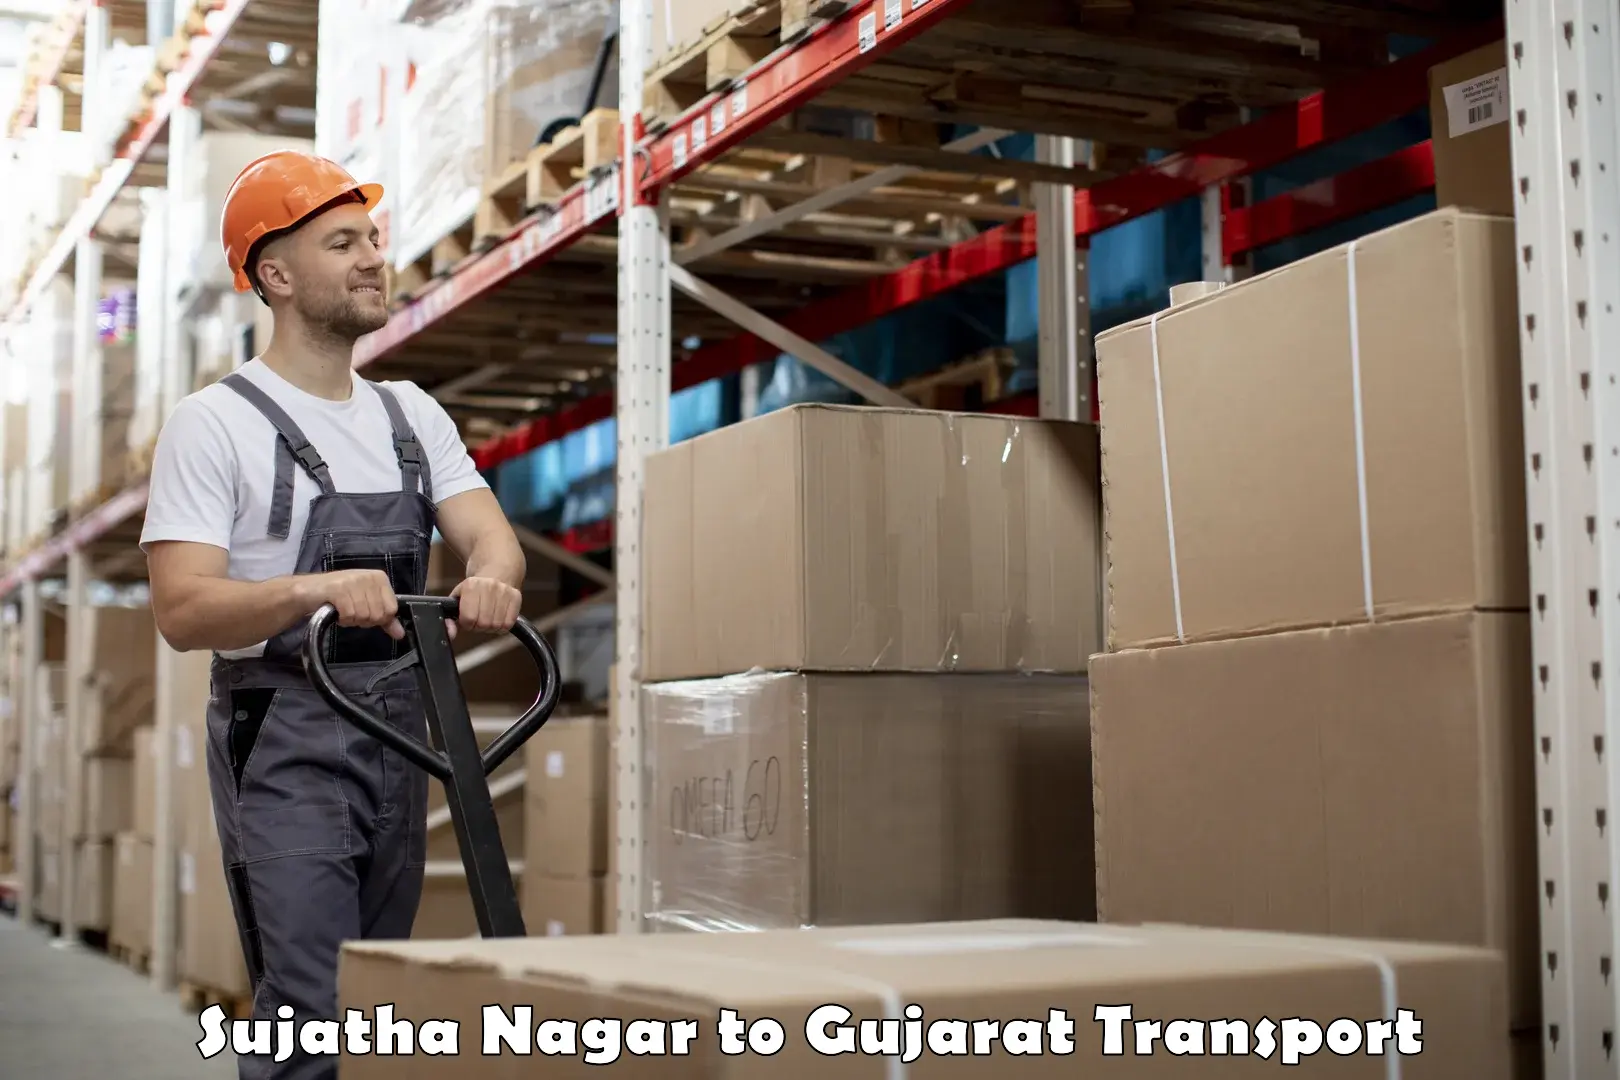 International cargo transportation services in Sujatha Nagar to IIIT Vadodara